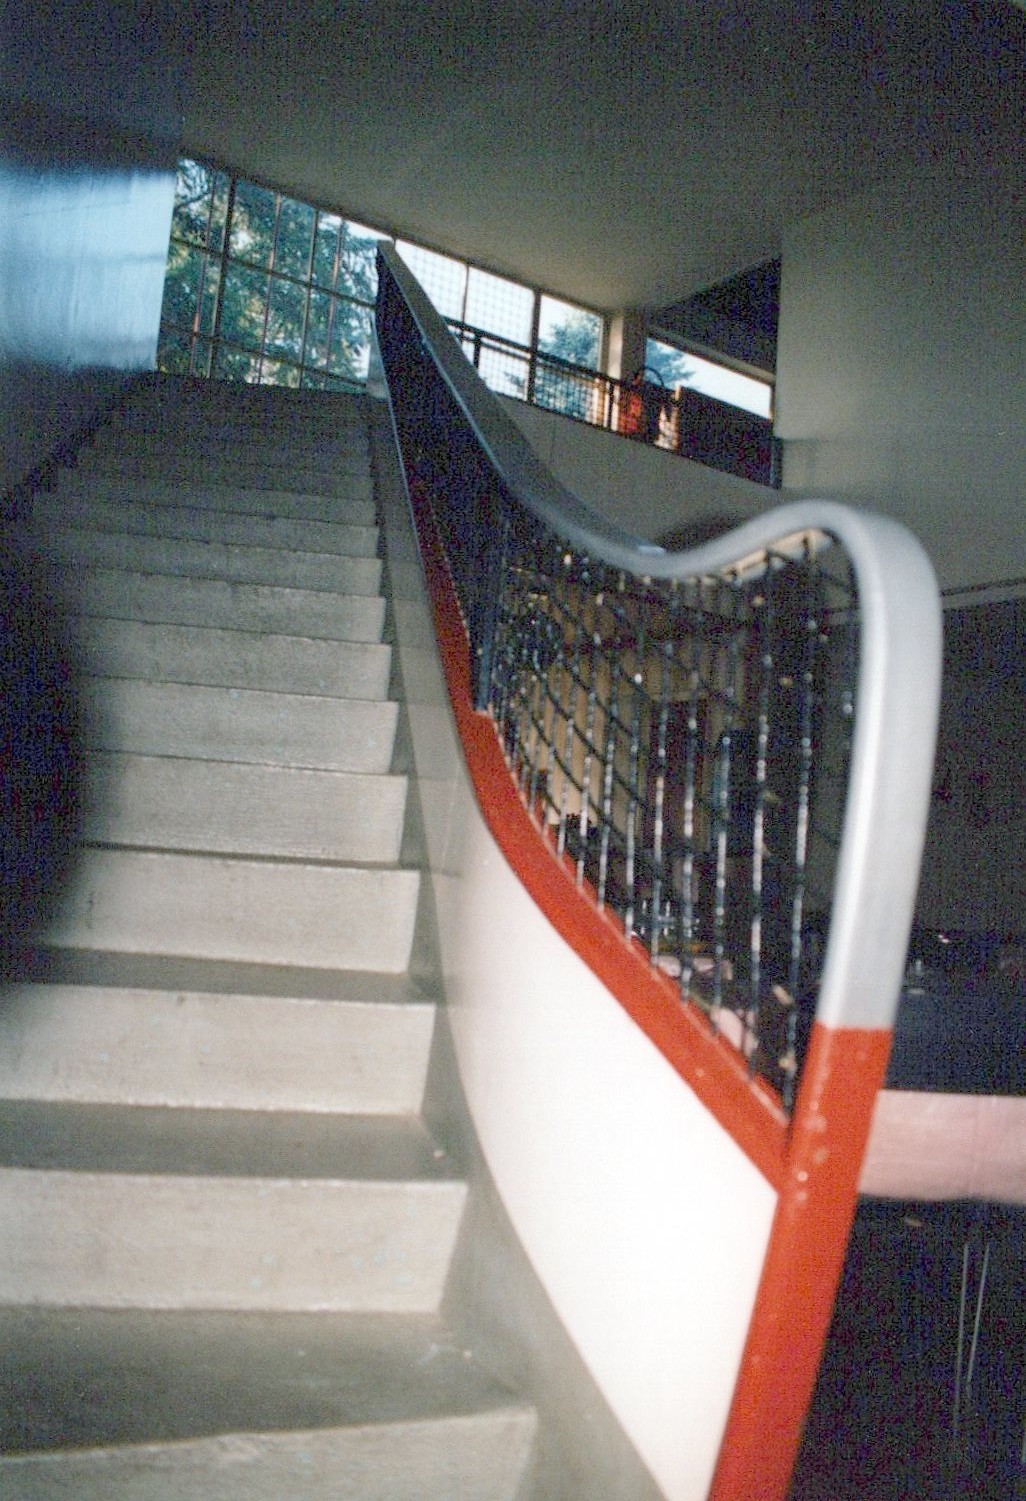 Fotografie: Treppe zum Obergeschoss (Haus Schminke RR-F)